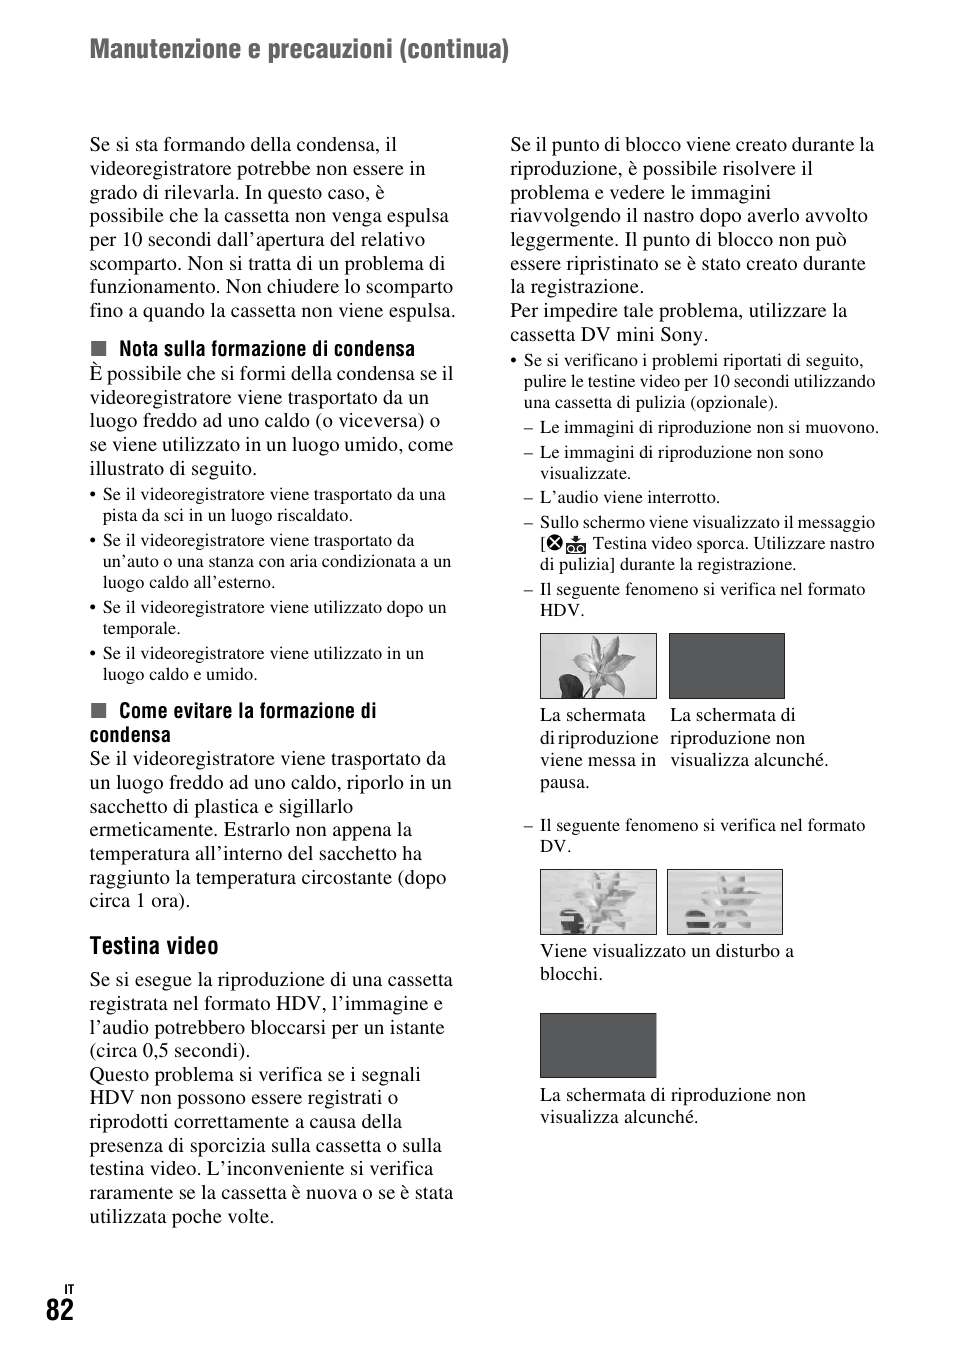 P. 82), I (p. 82), P. 82 | Manutenzione e precauzioni (continua), Testina video | Sony GV-HD700E Benutzerhandbuch | Seite 180 / 195